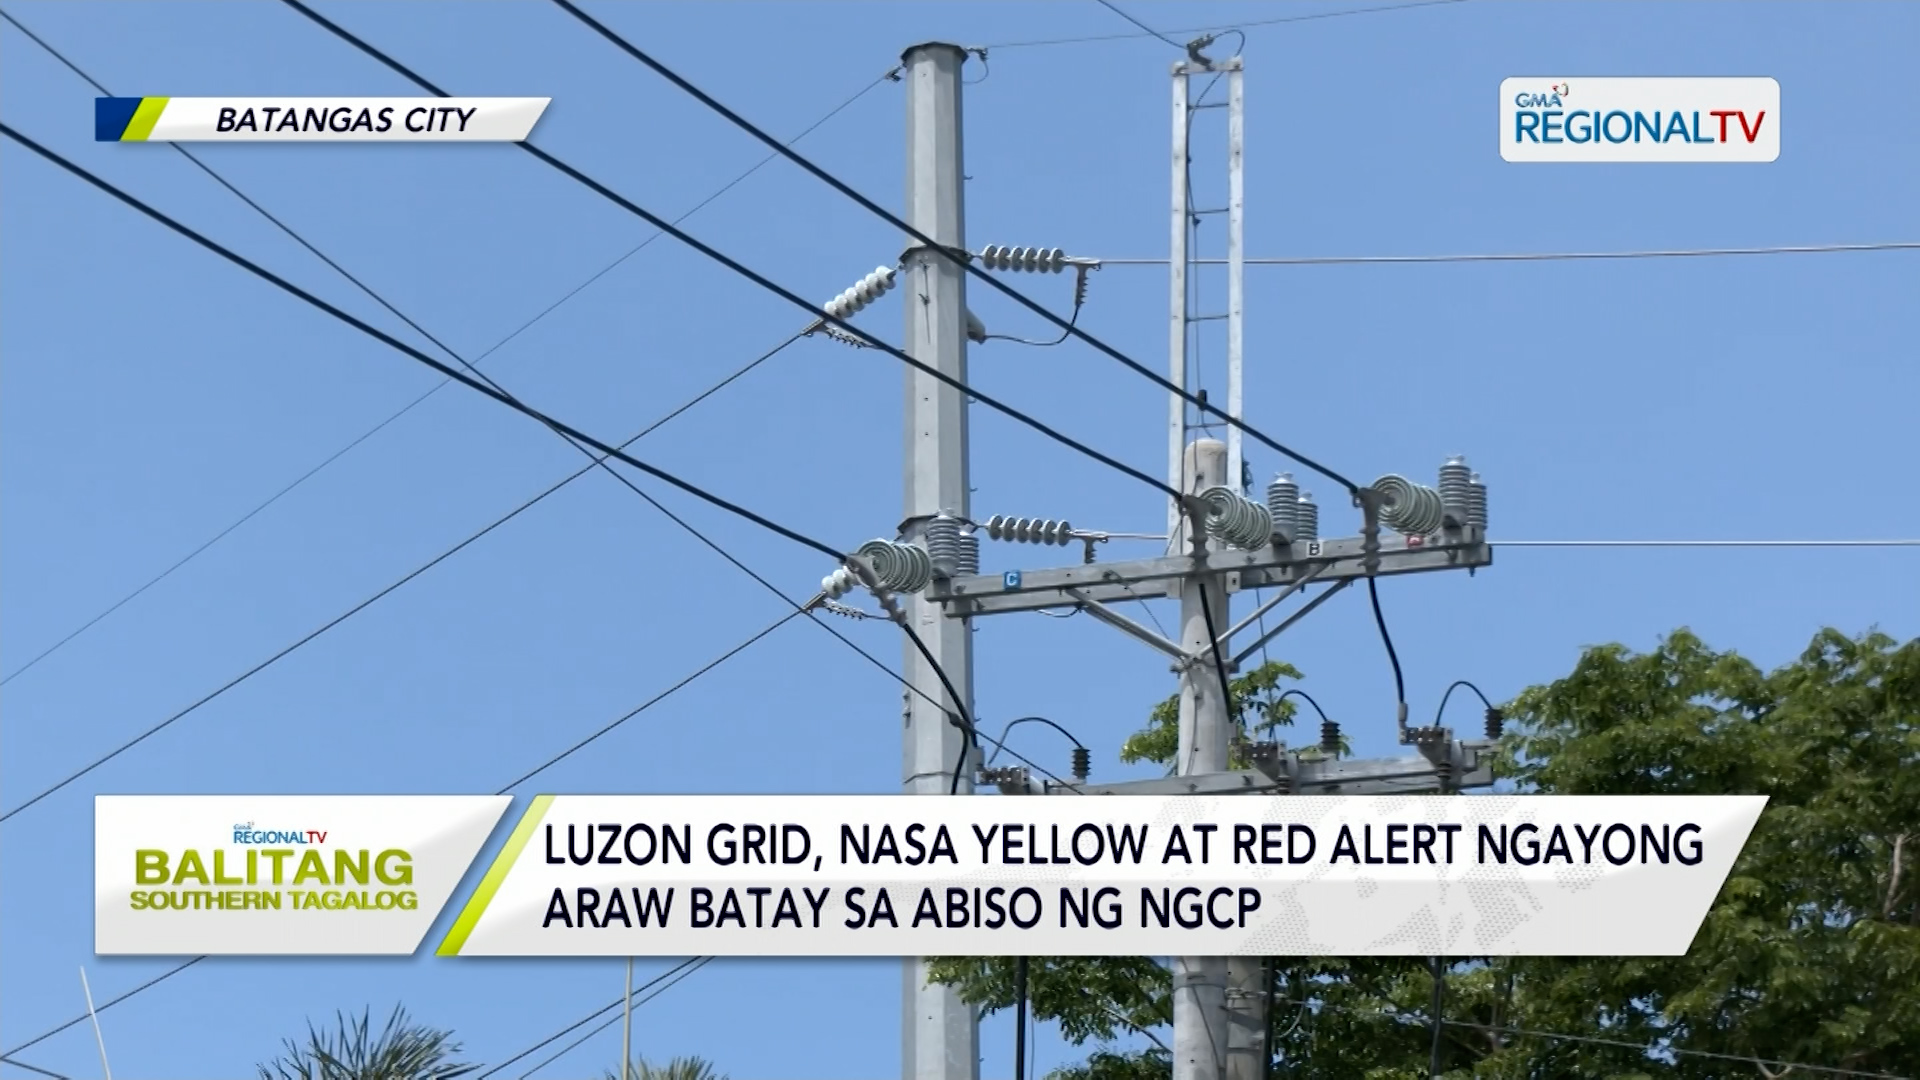 Luzon Grid, nasa yellow at red alert ngayong araw, April 18